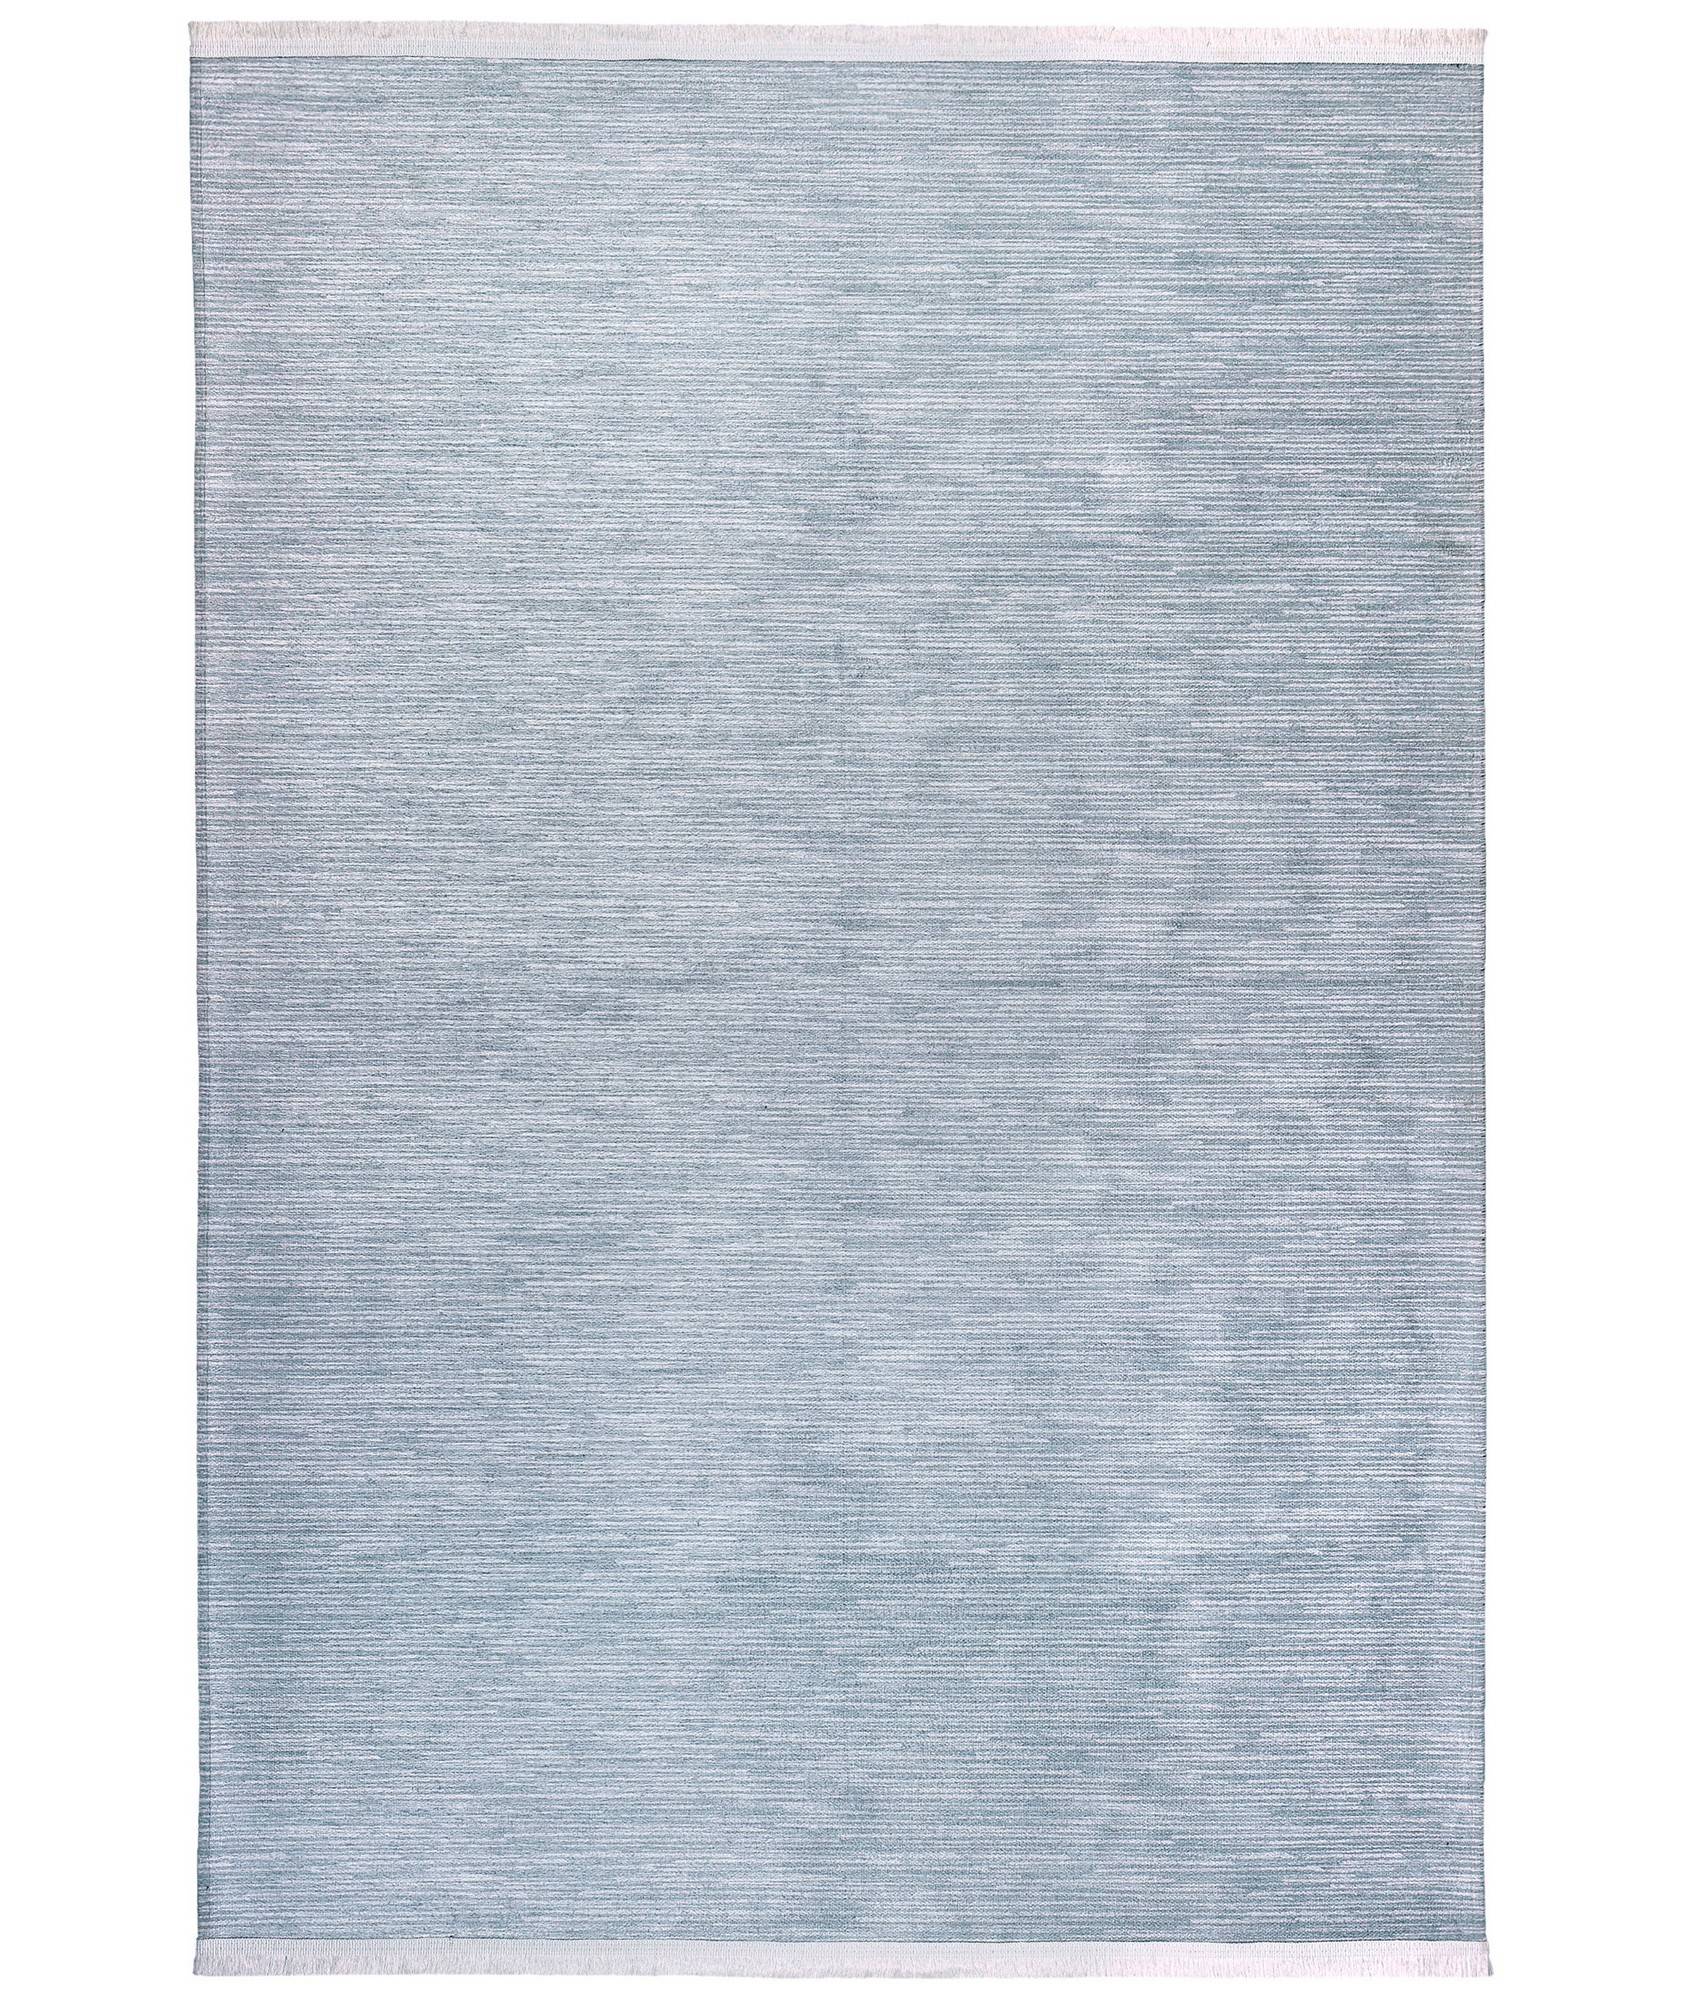 Bohni Teppich 80x150cm 100% Velours Blau und Weiß